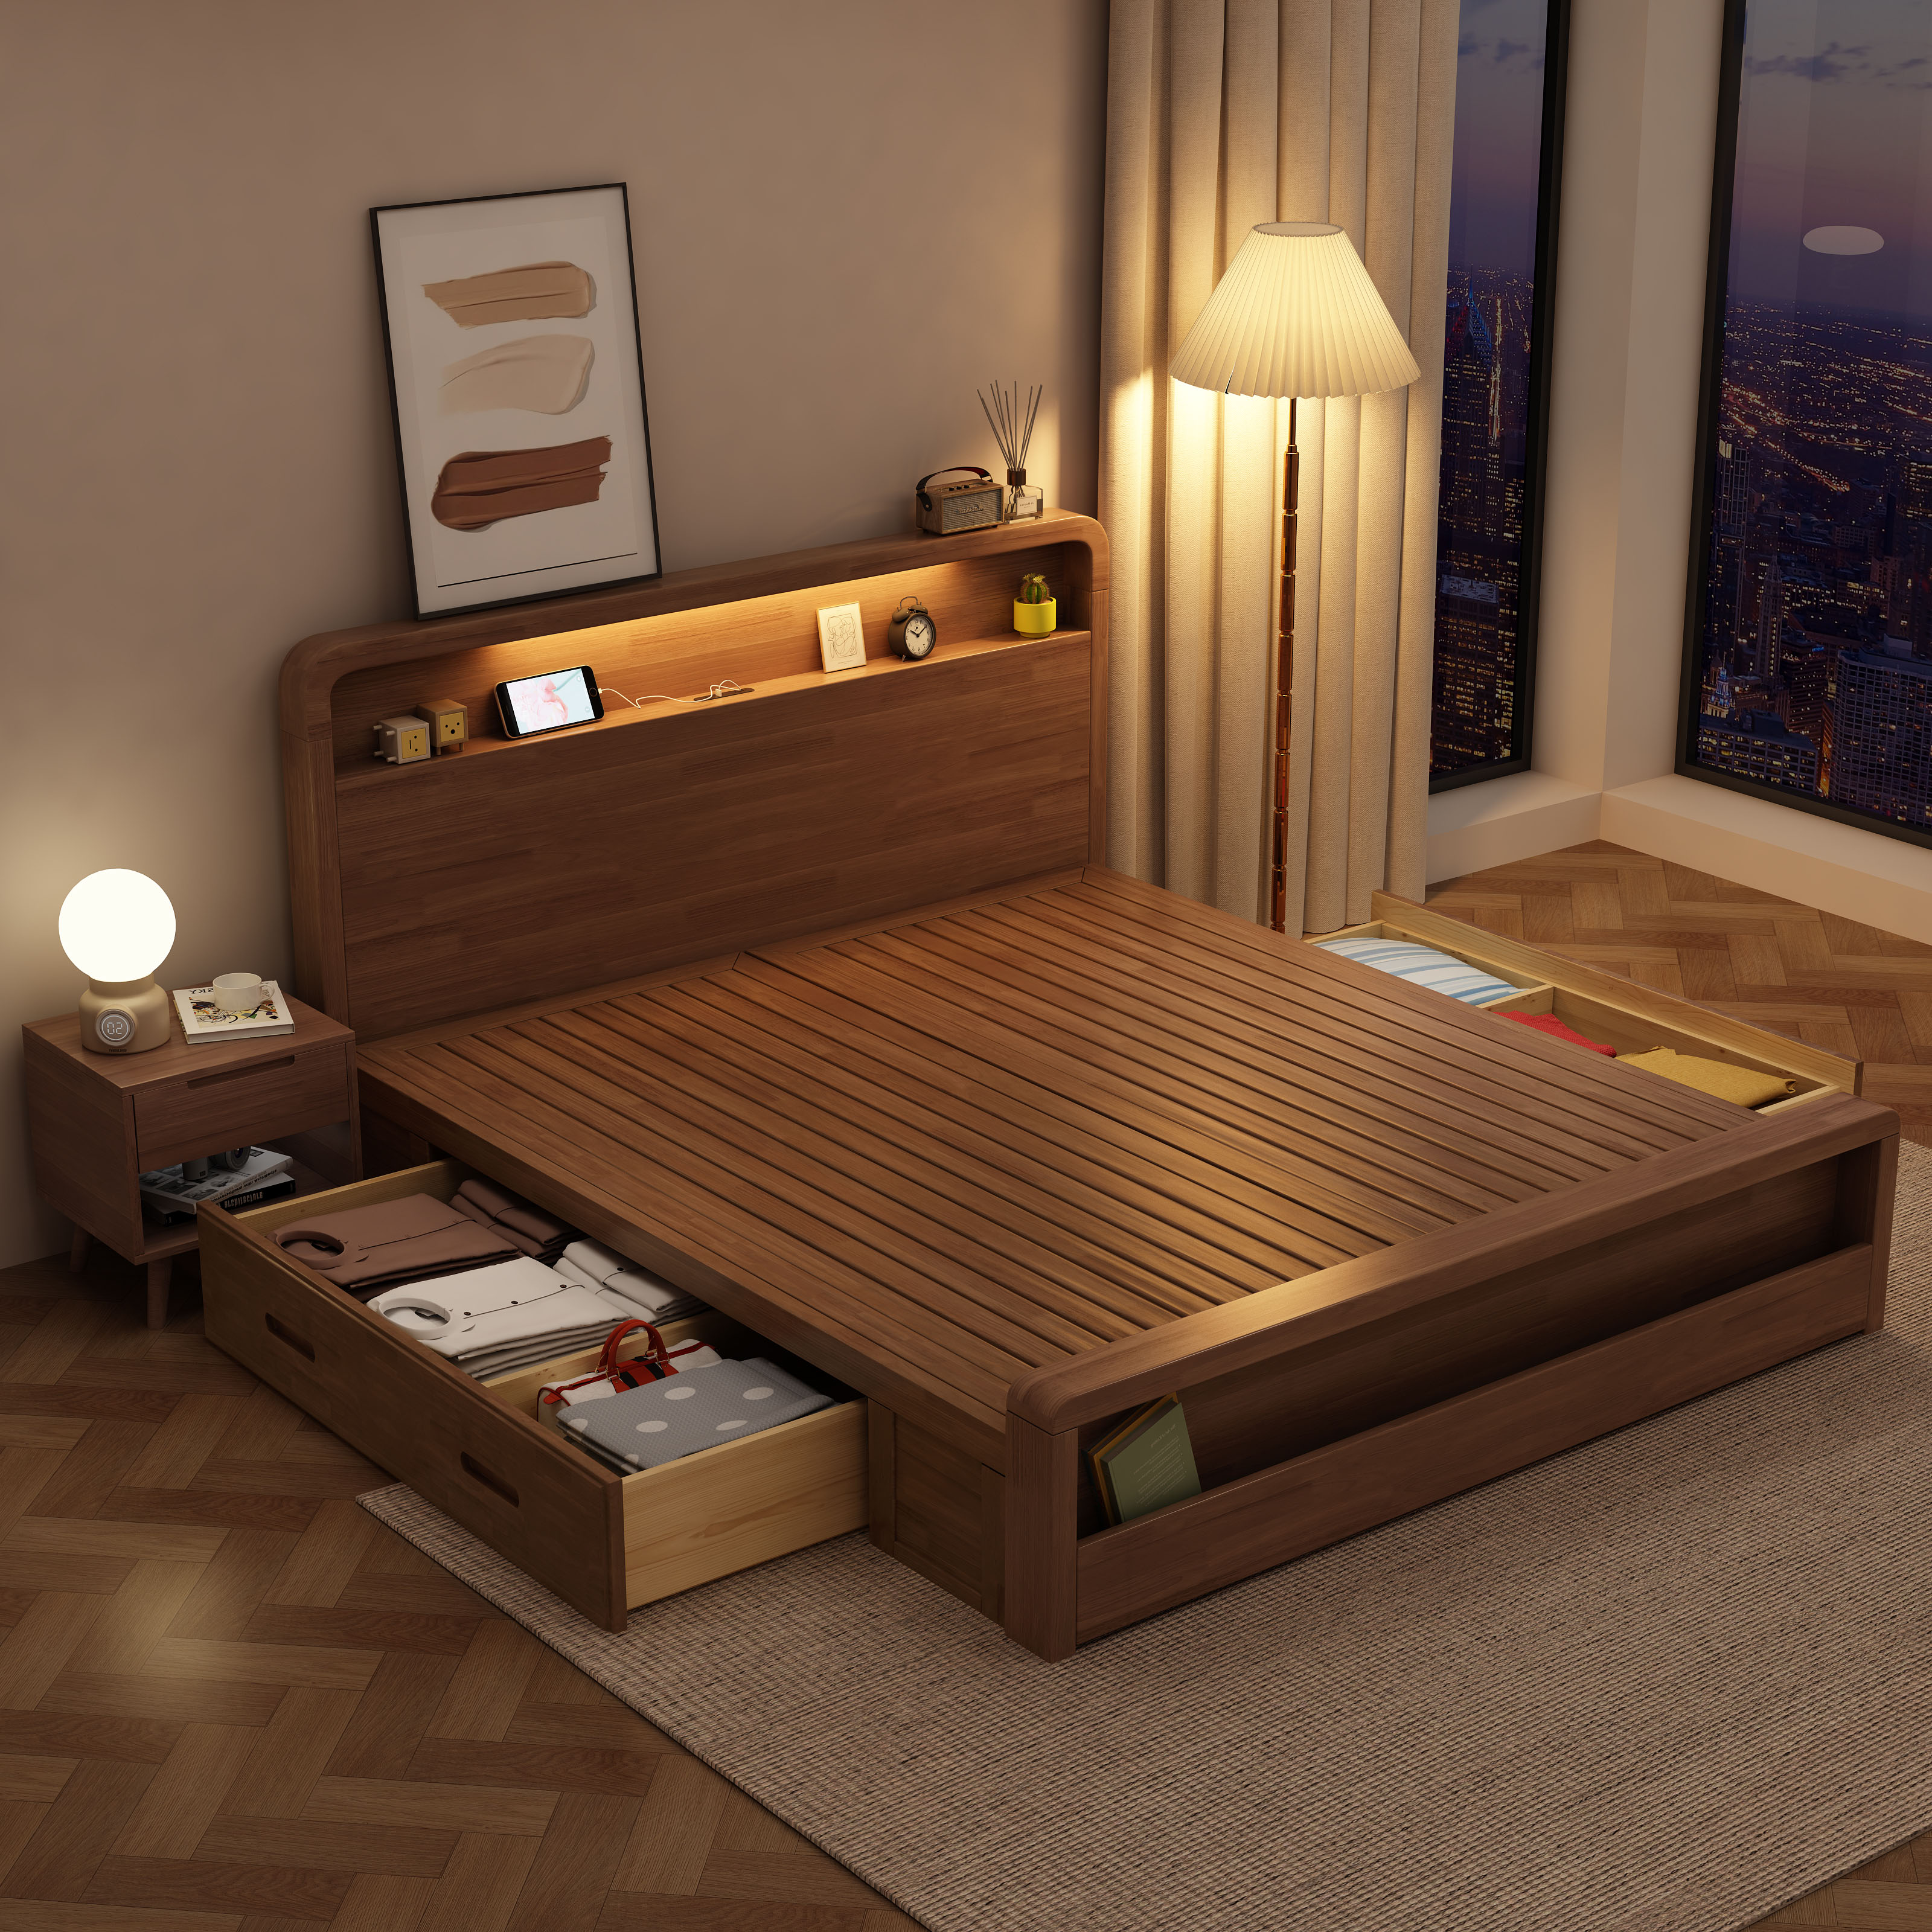 北歐實木床簡約現代日式1.5m床雙人床主臥床床架儲物床大床省空間